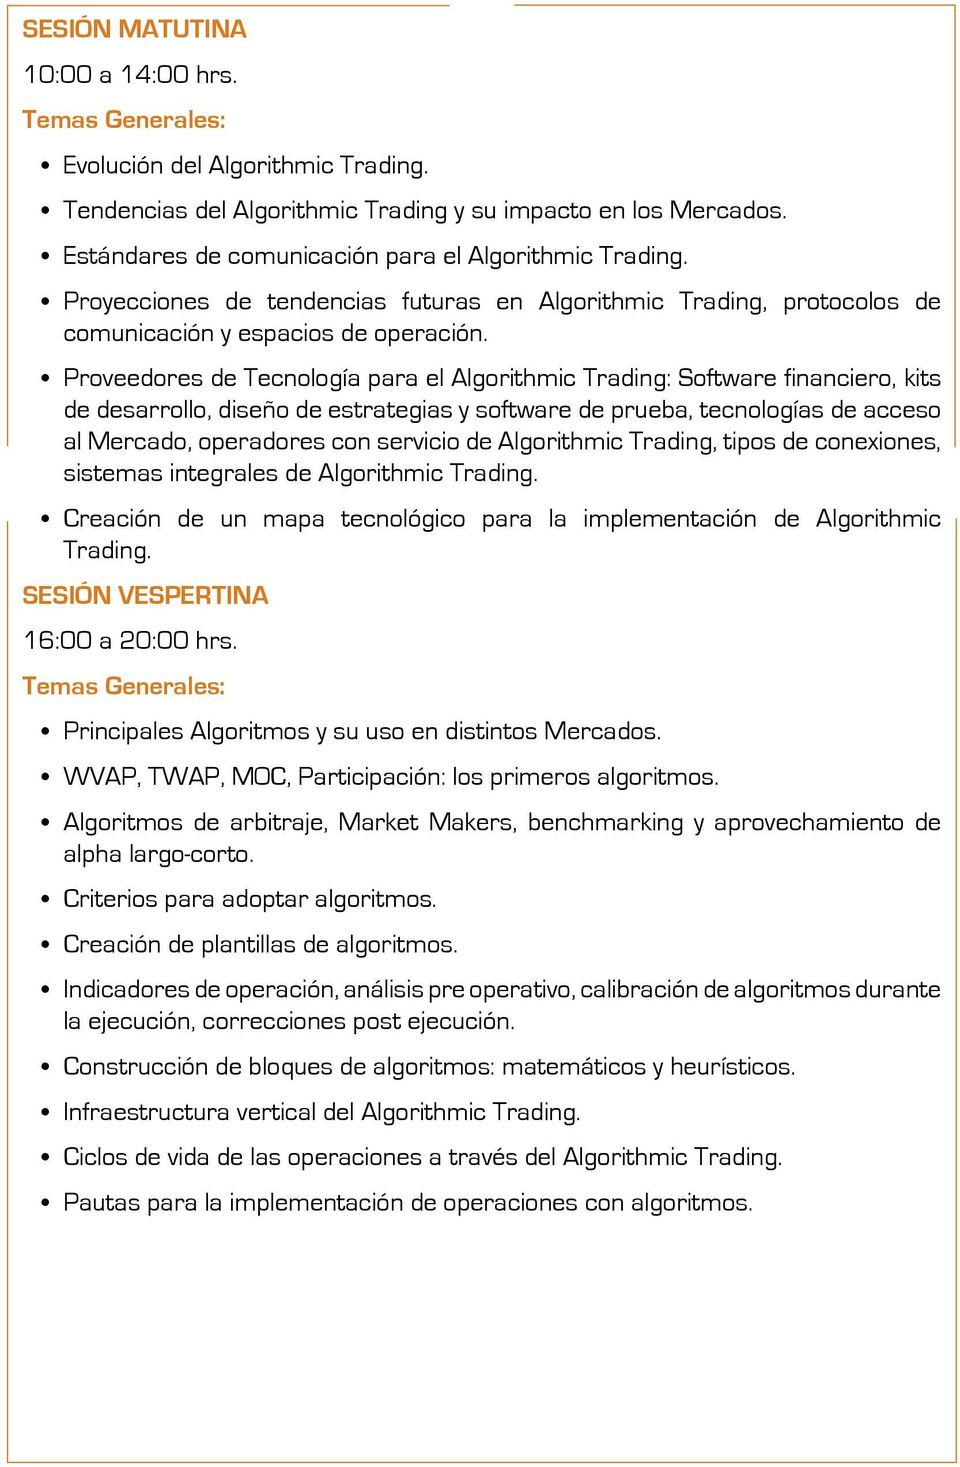 Proveedores de Tecnología para el Algorithmic Trading: Software financiero, kits de desarrollo, diseño de estrategias y software de prueba, tecnologías de acceso al Mercado, operadores con servicio